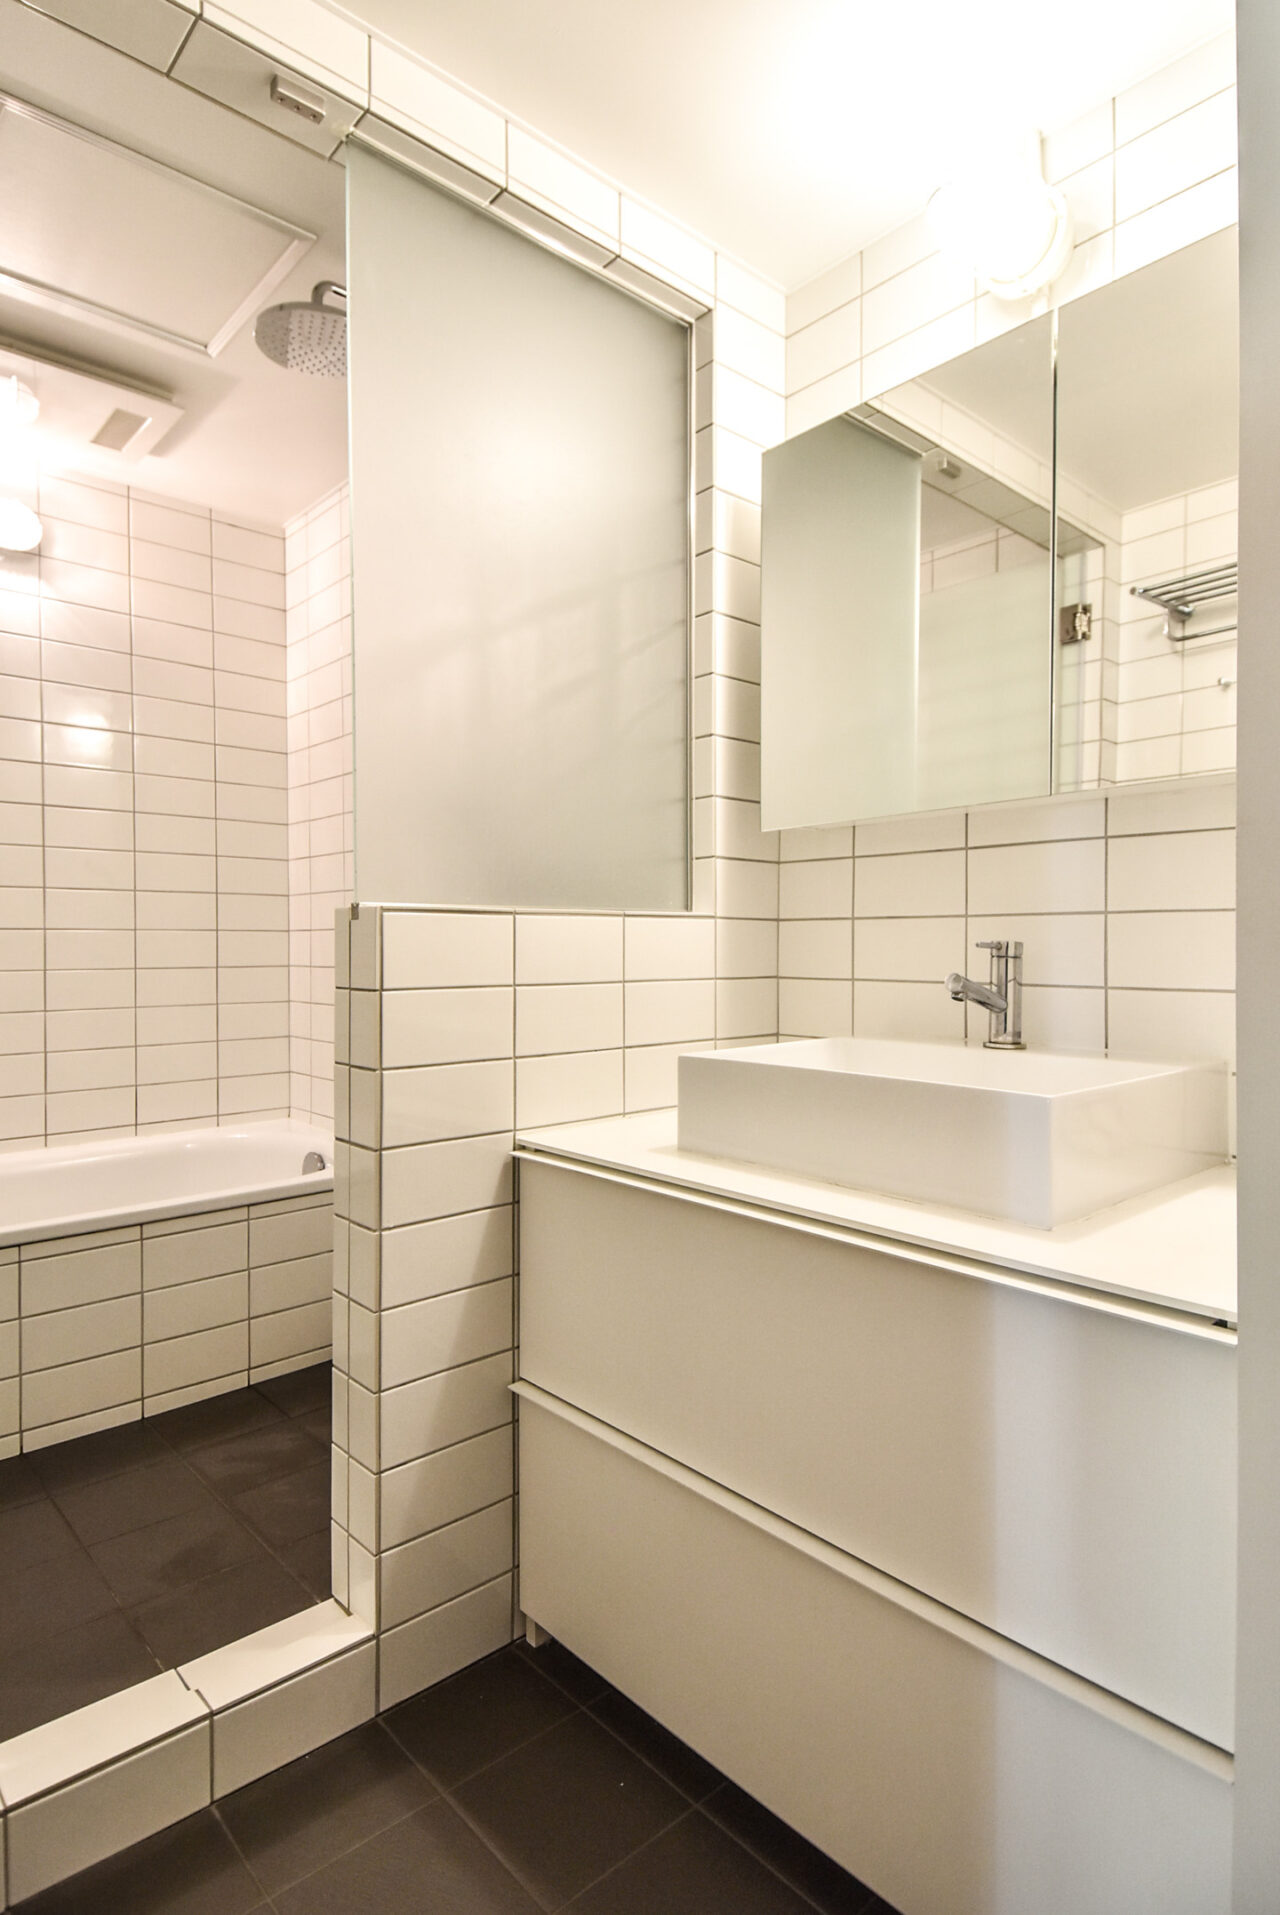 モダンで洗練されたバスルーム。白いタイル、クリアなミラー、シンプルな洗面台が特徴。明るい照明で清潔感があり、リラックスしたバスタイムを演出します。